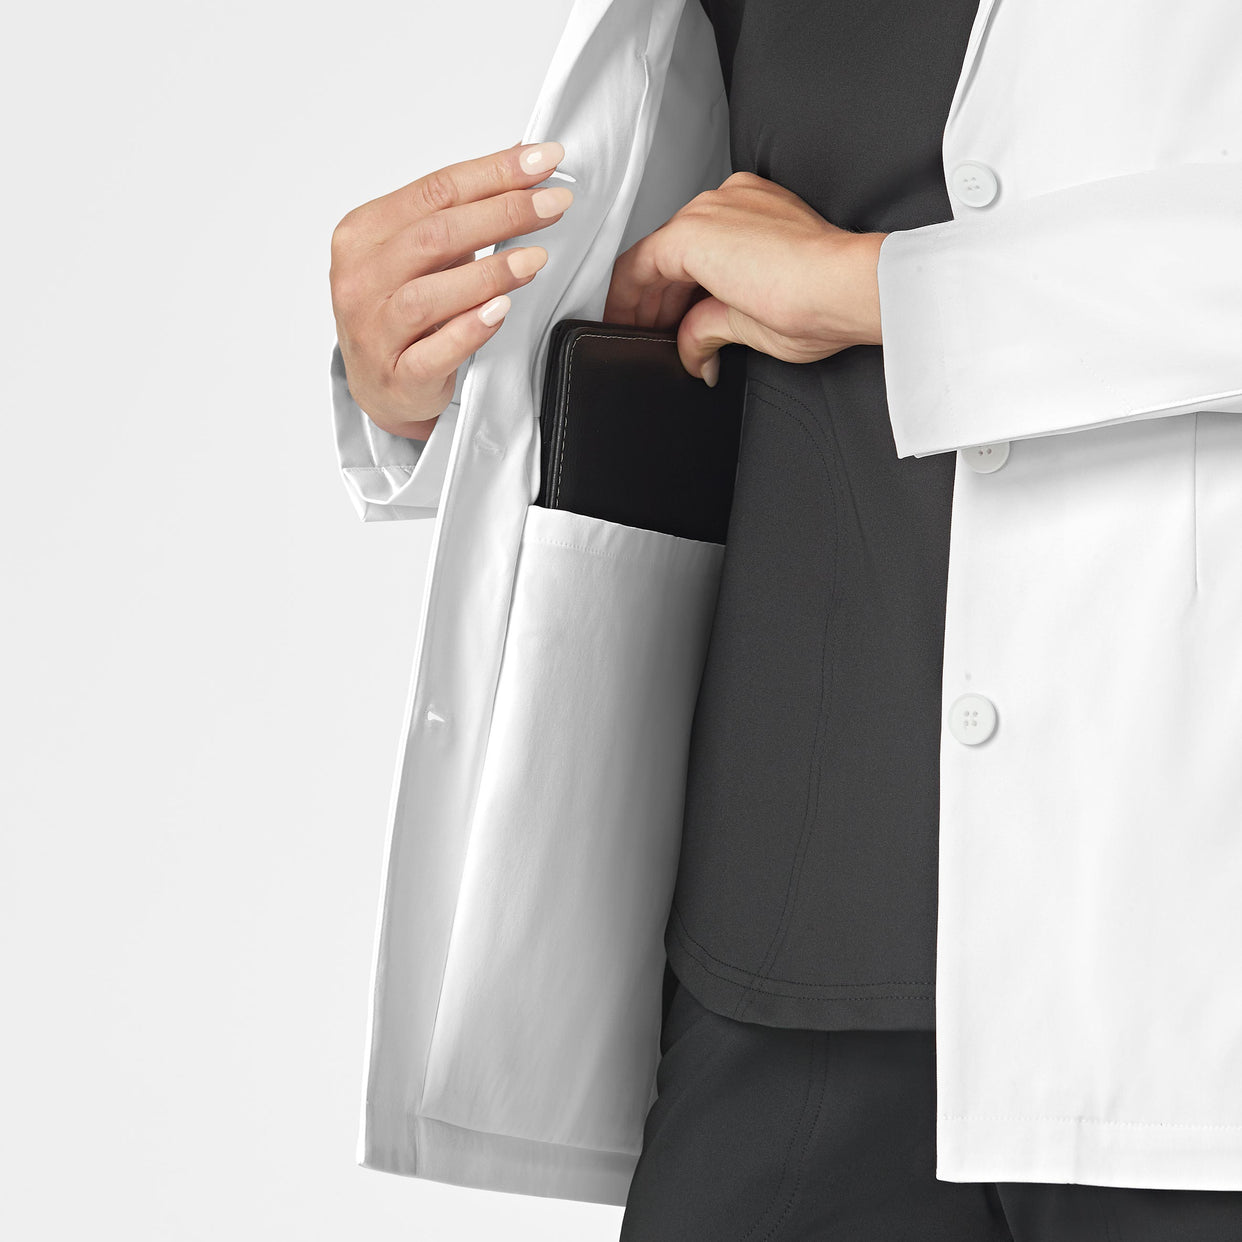 WonderWink Slate Women's 28 Inch Doctors Coat - White